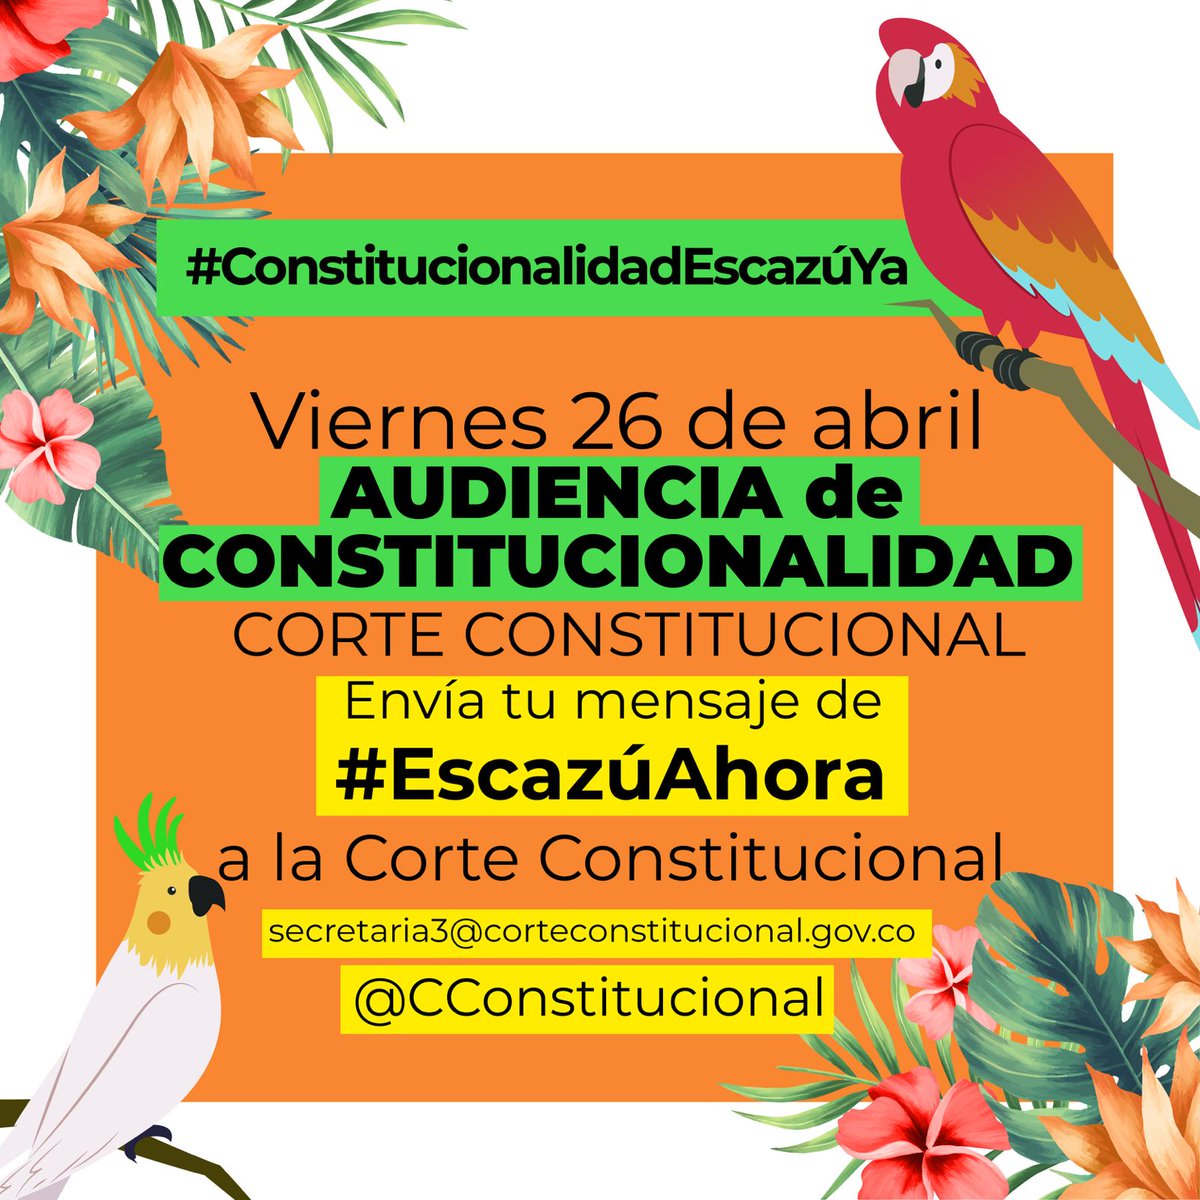 🧡 Mañana viernes 26 de abril desde las 8am, te esperamos en la Corte Constitucional para respaldar la Constitucionalidad del Acuerdo de Escazú en Colombia.

#EscazúAhora por información, participación, justicia ambiental y Defensoras ambientales

#ConstitucionalidadEscazúYa